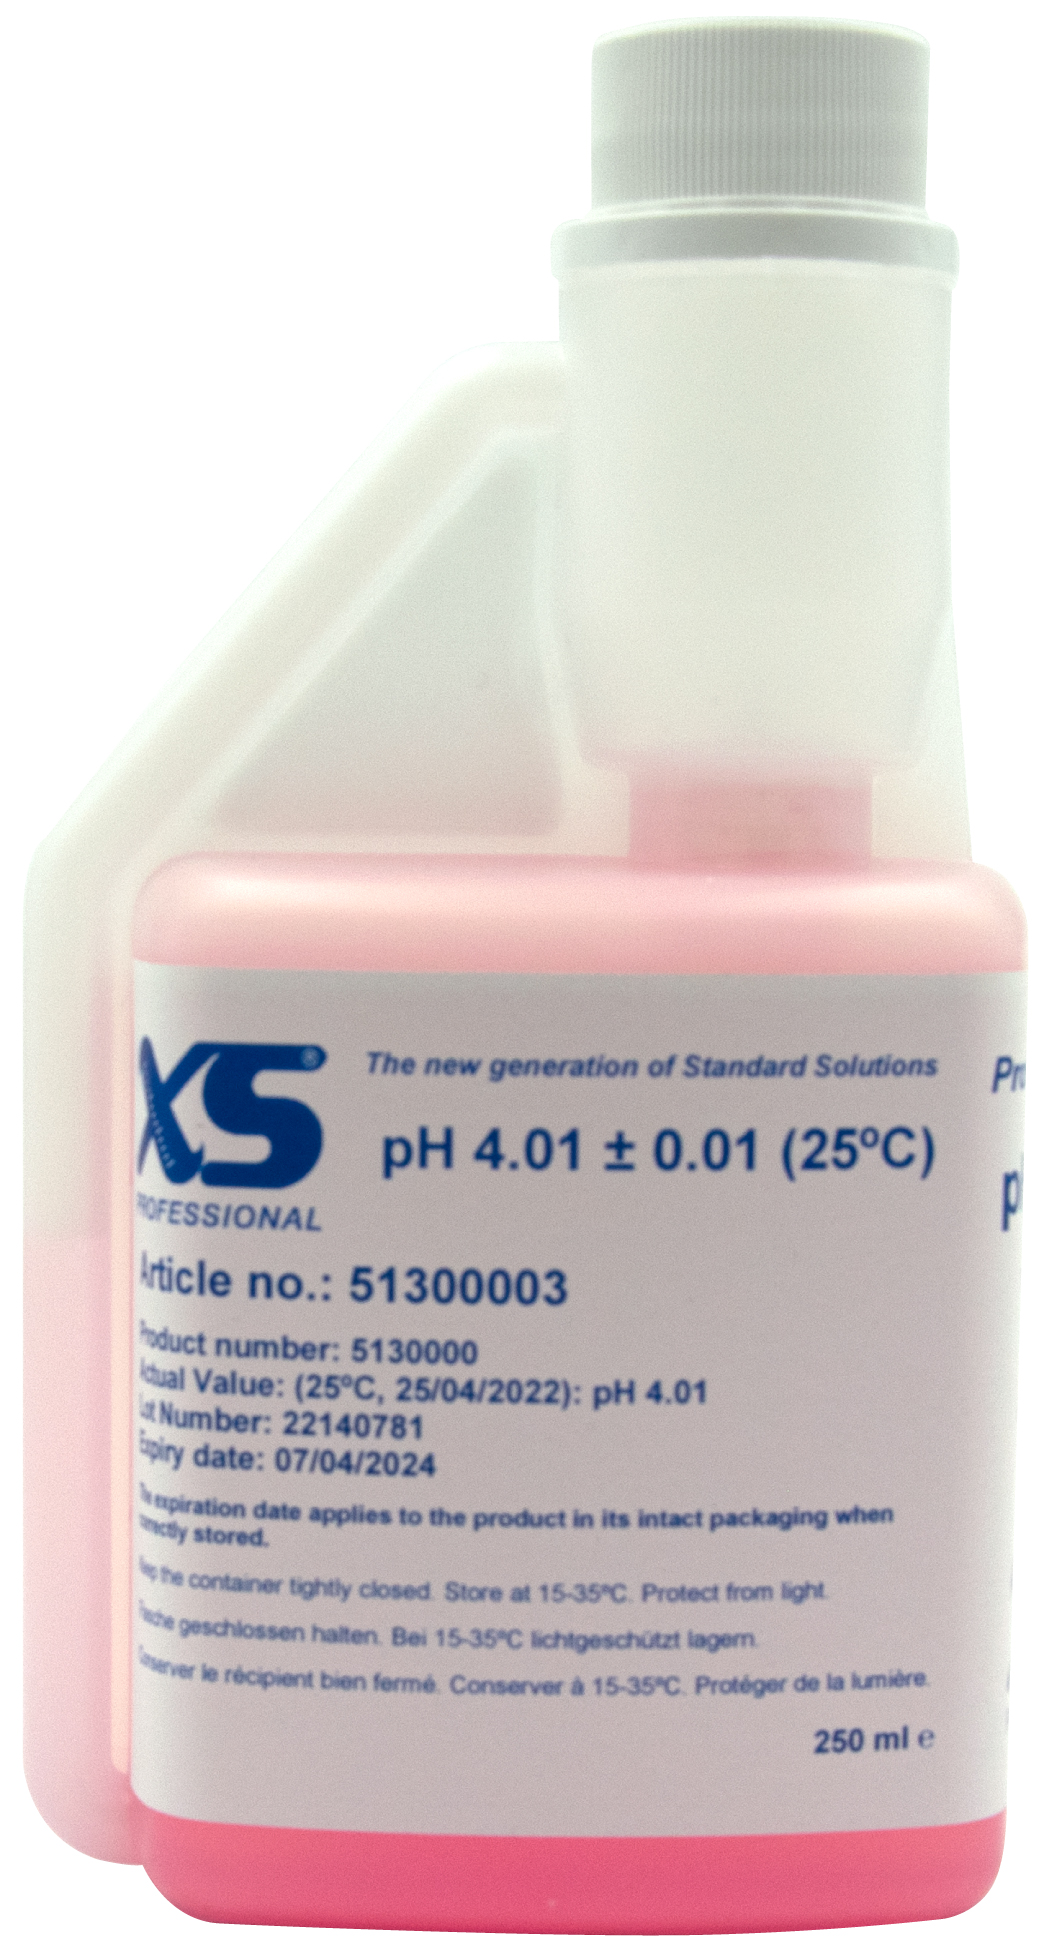 XS Professionell pH Pufferlösung mit DAkkS Zertifikat